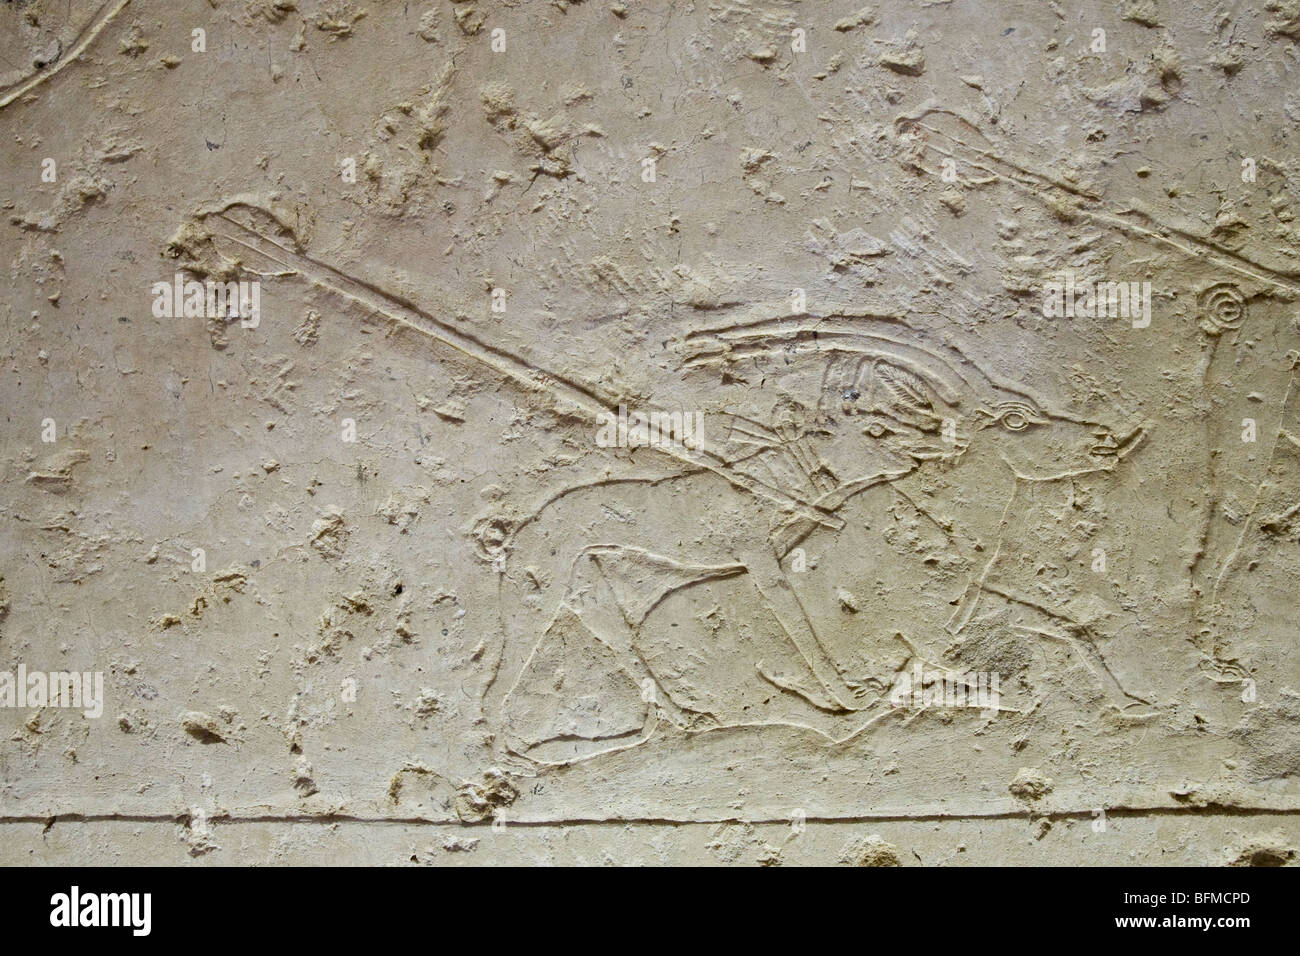 Erleichterung der Jagd Hunde fangen Antilope aufgespießt von Hunter in die Gräber bei Meir, Nord-westlich von Assyut in Mittelägypten Stockfoto